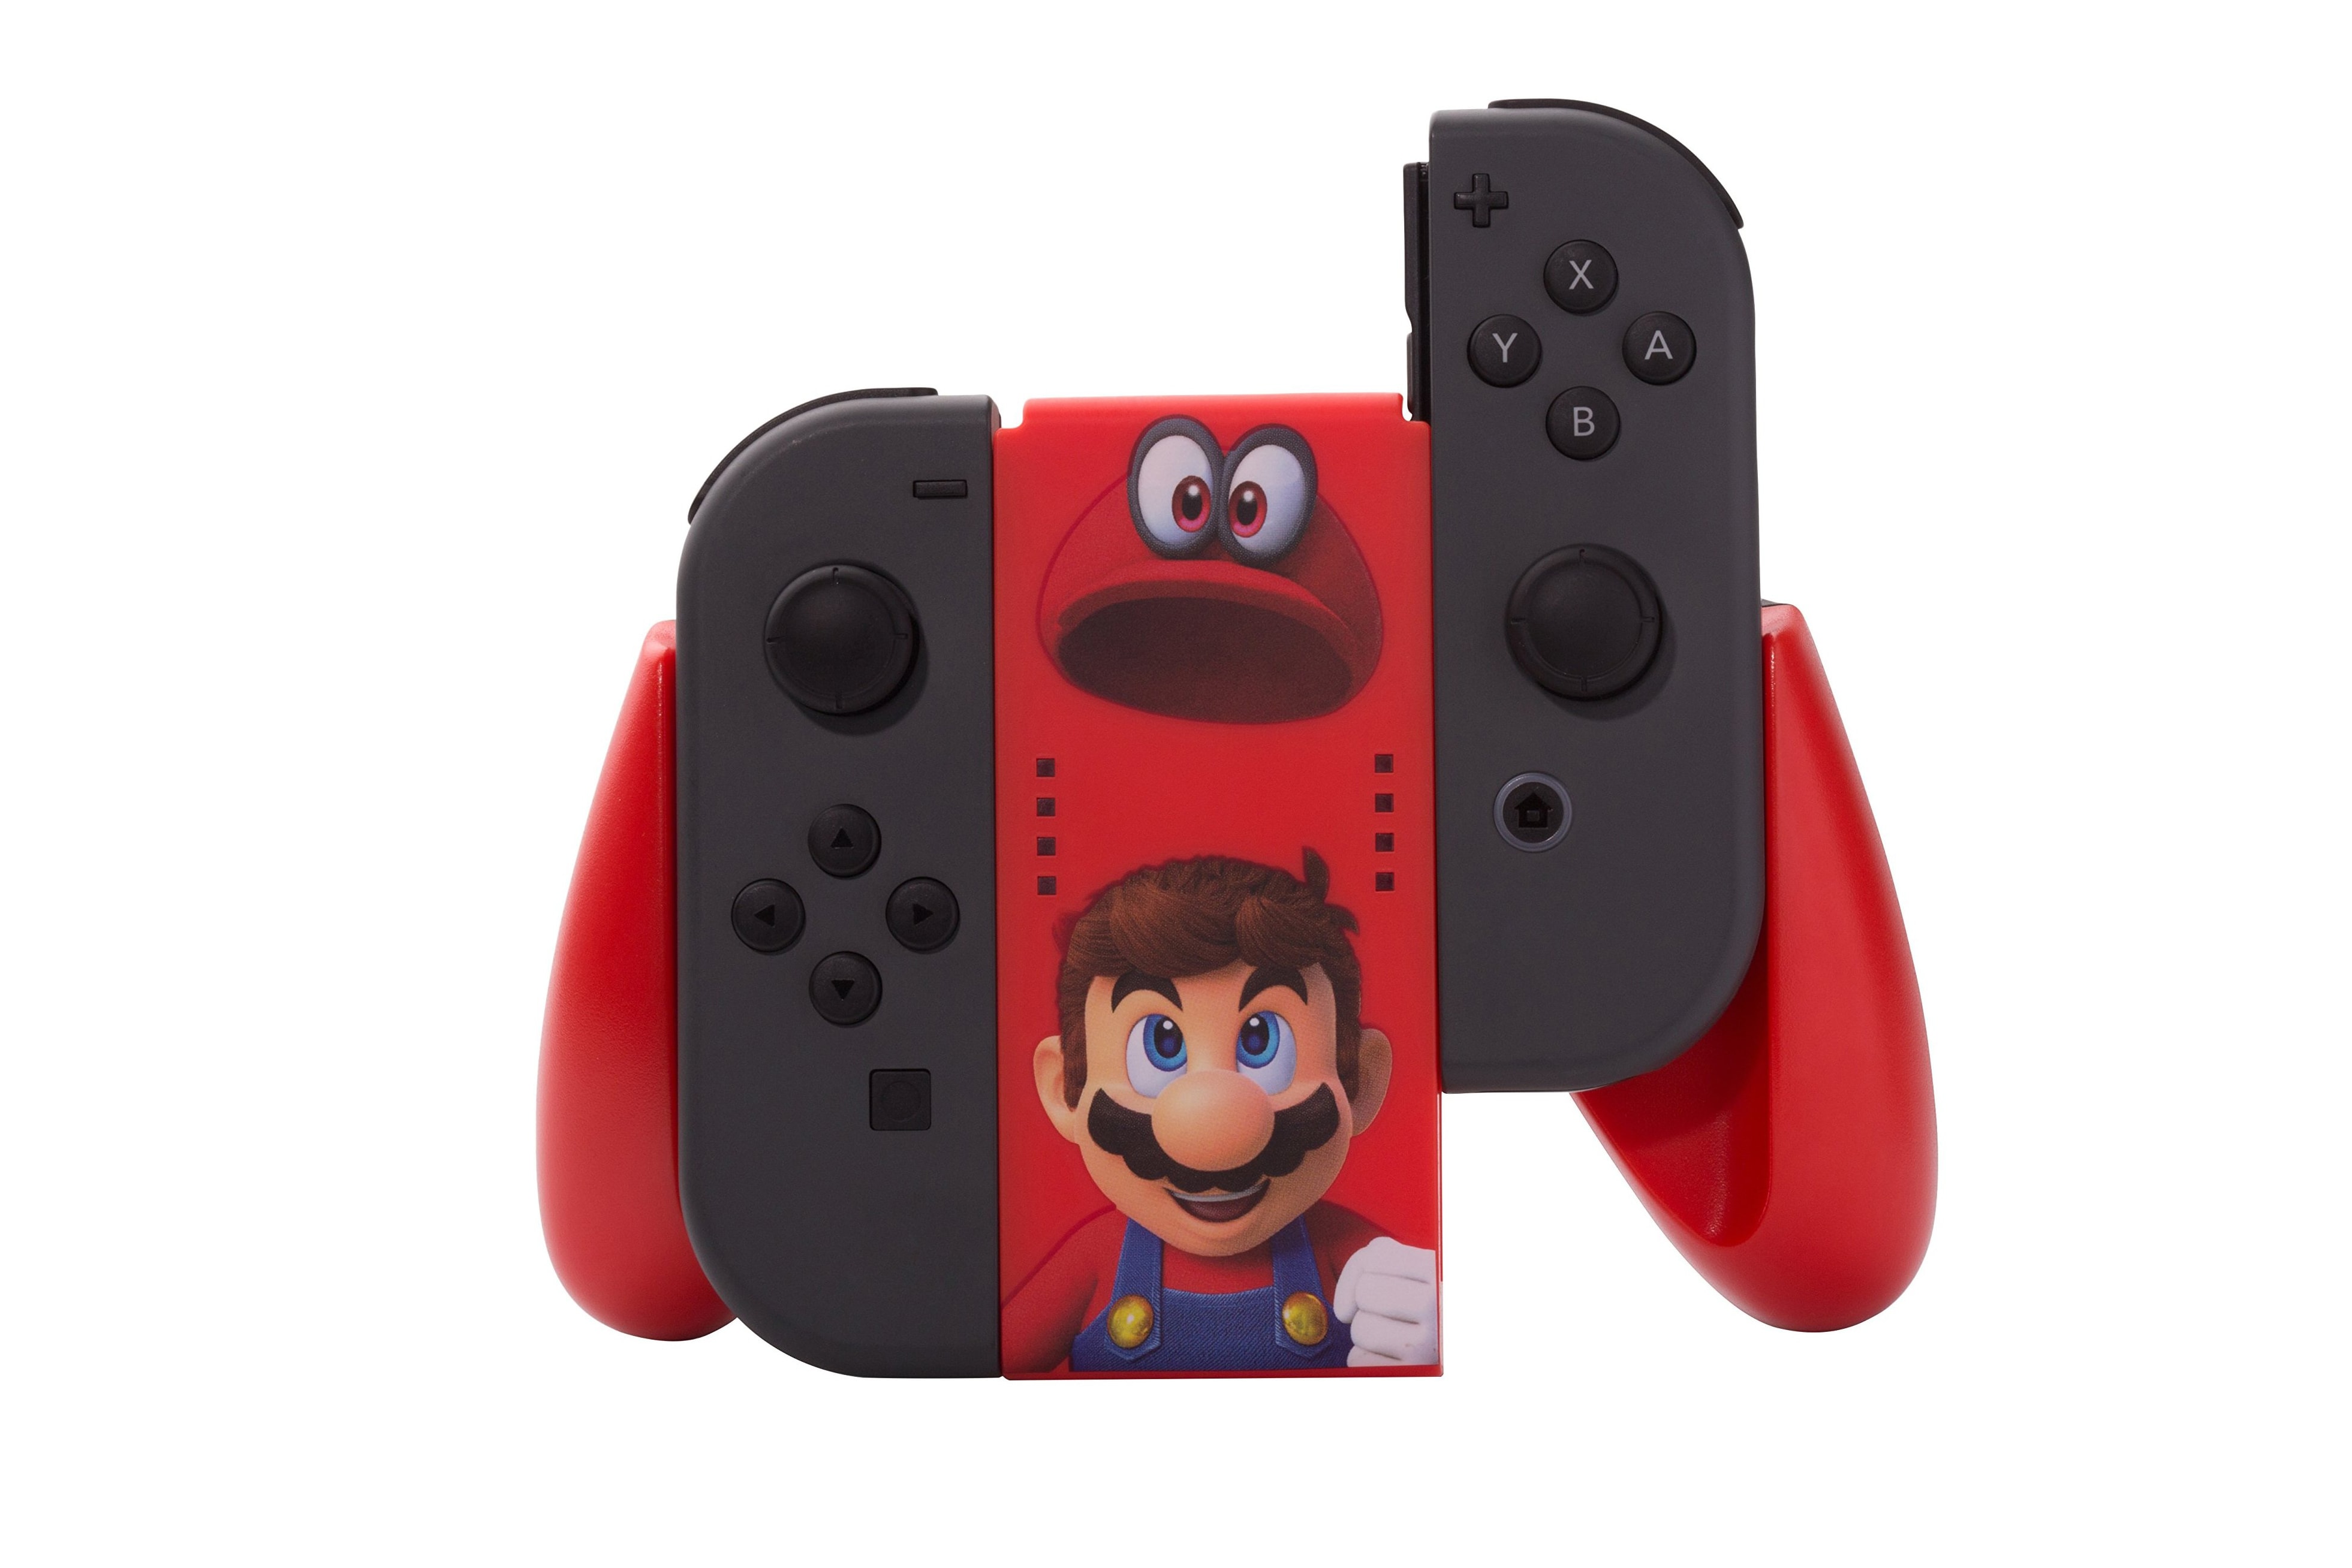 週邊品牌 PowerA 推出全紅色 Nintendo Switch Joy-Con 手掣